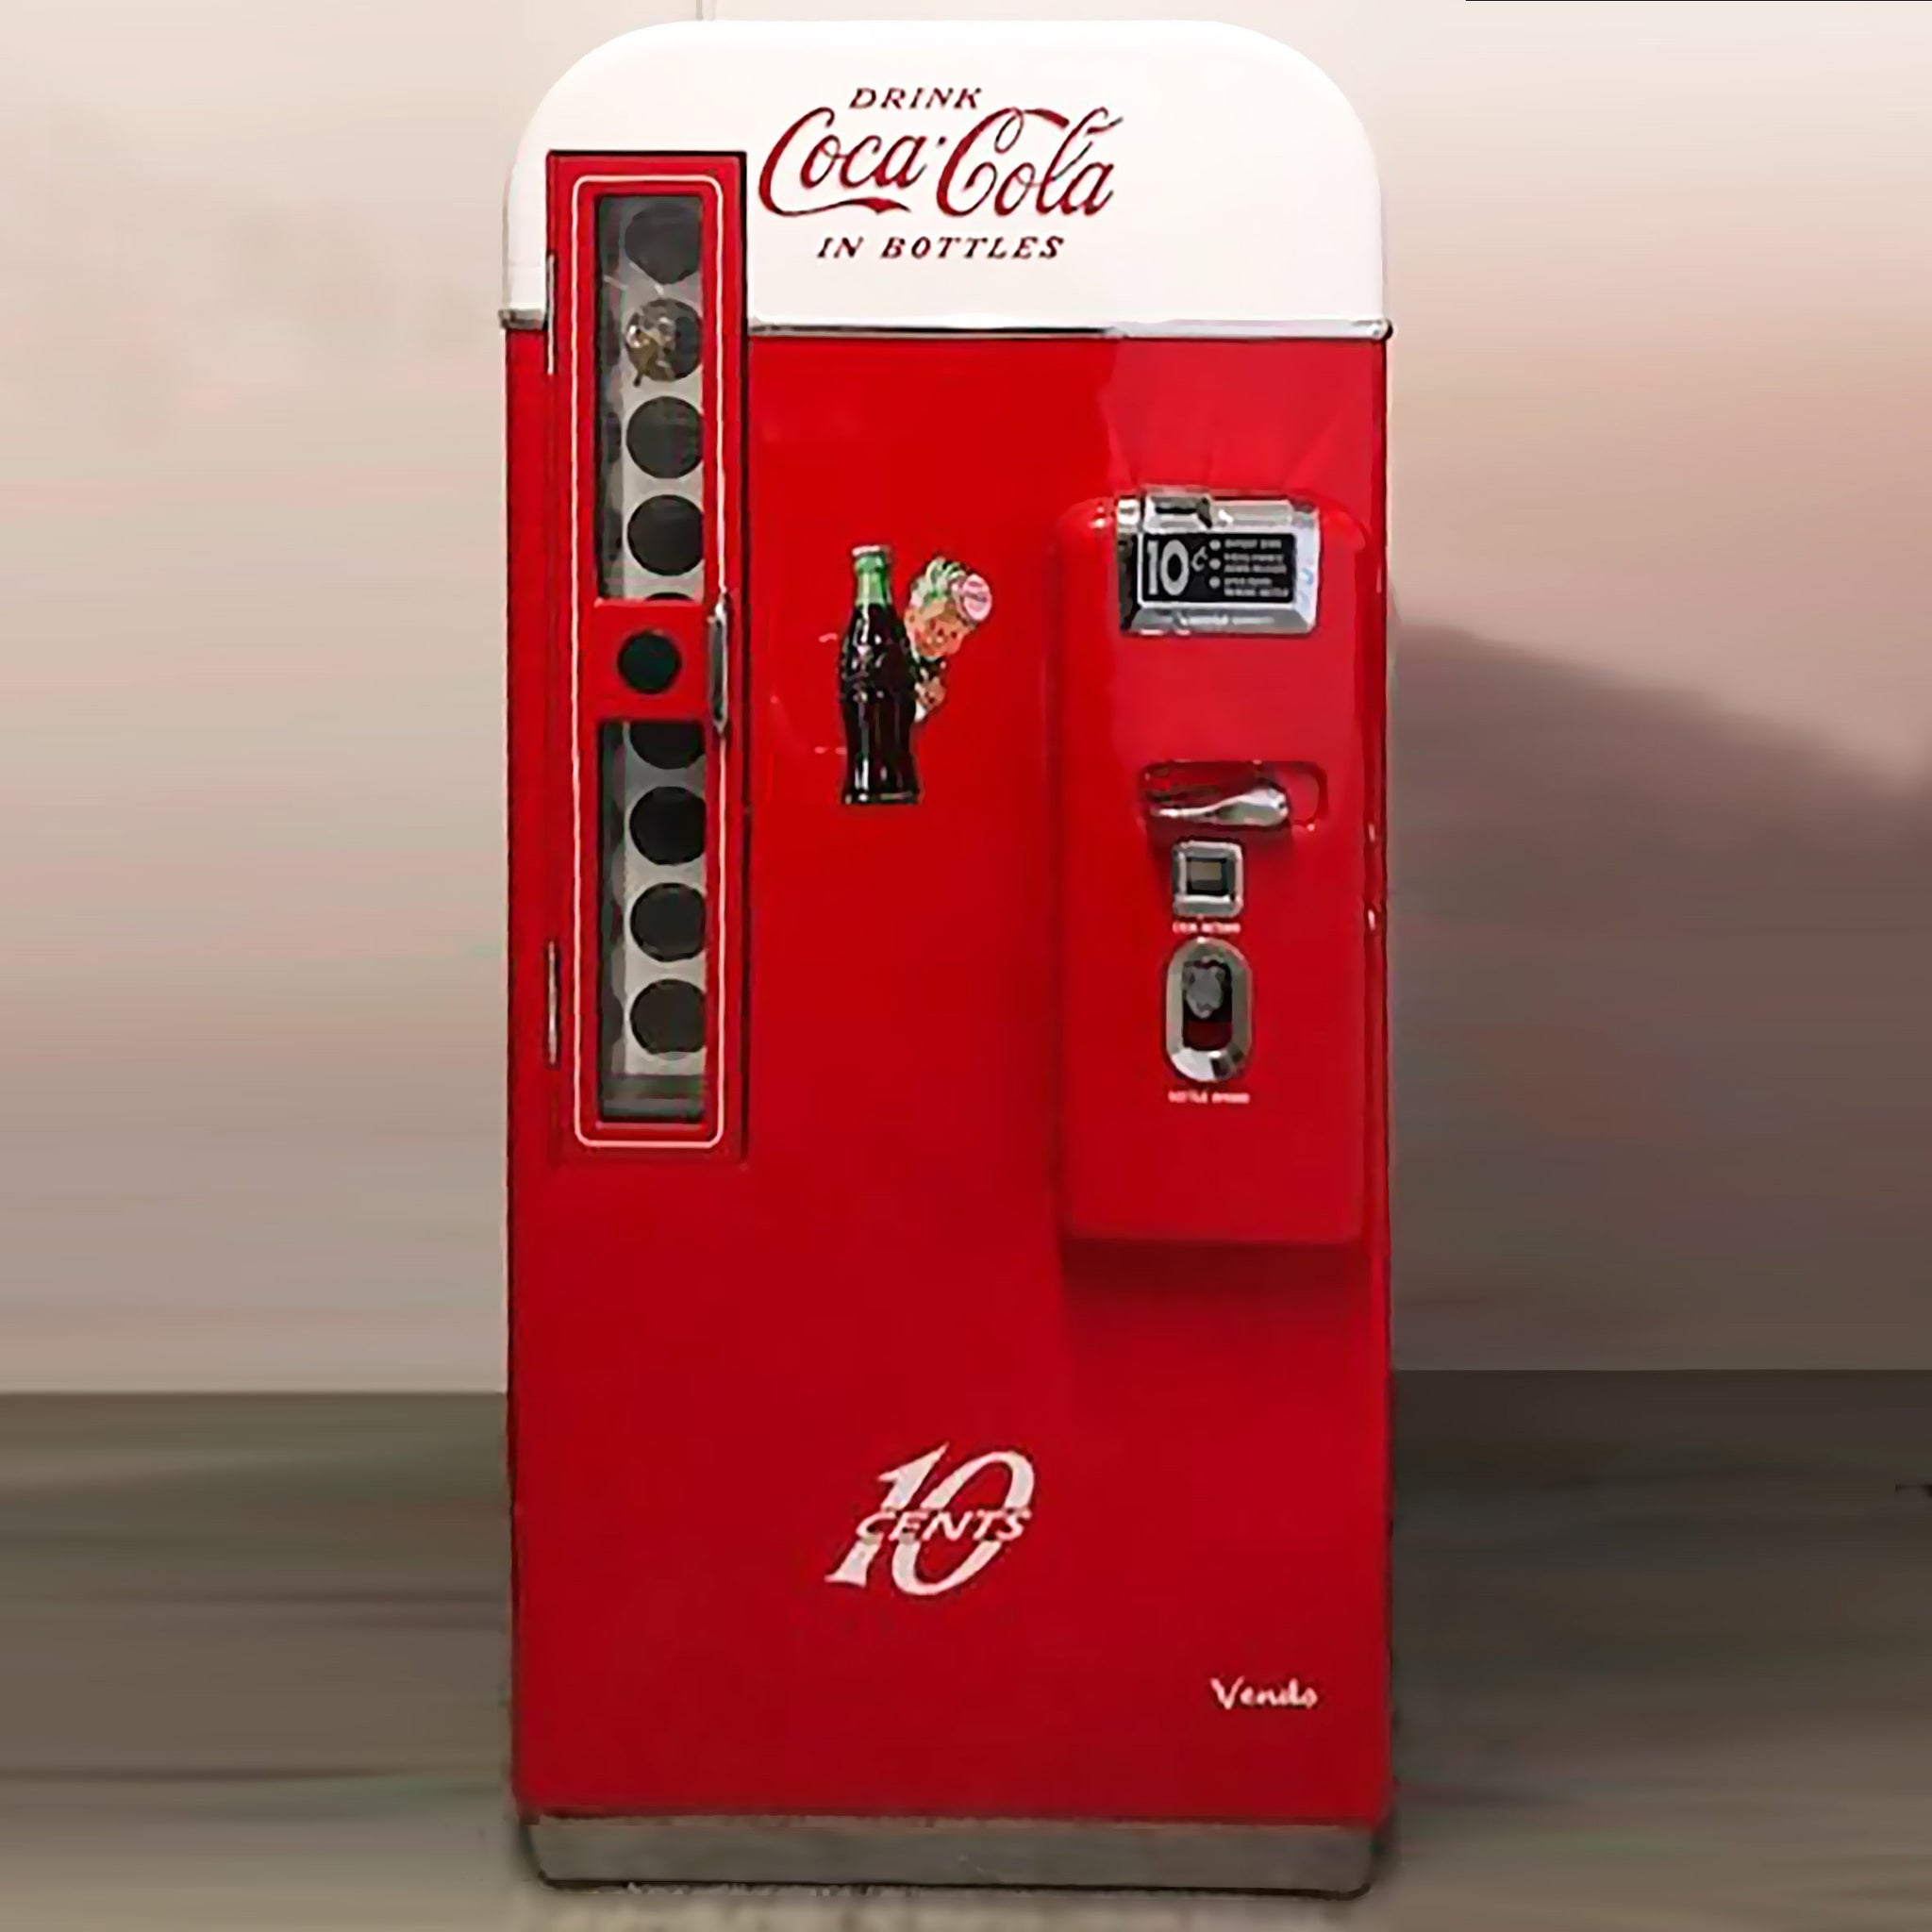 Vendo 81-A Coca-Cola Machine